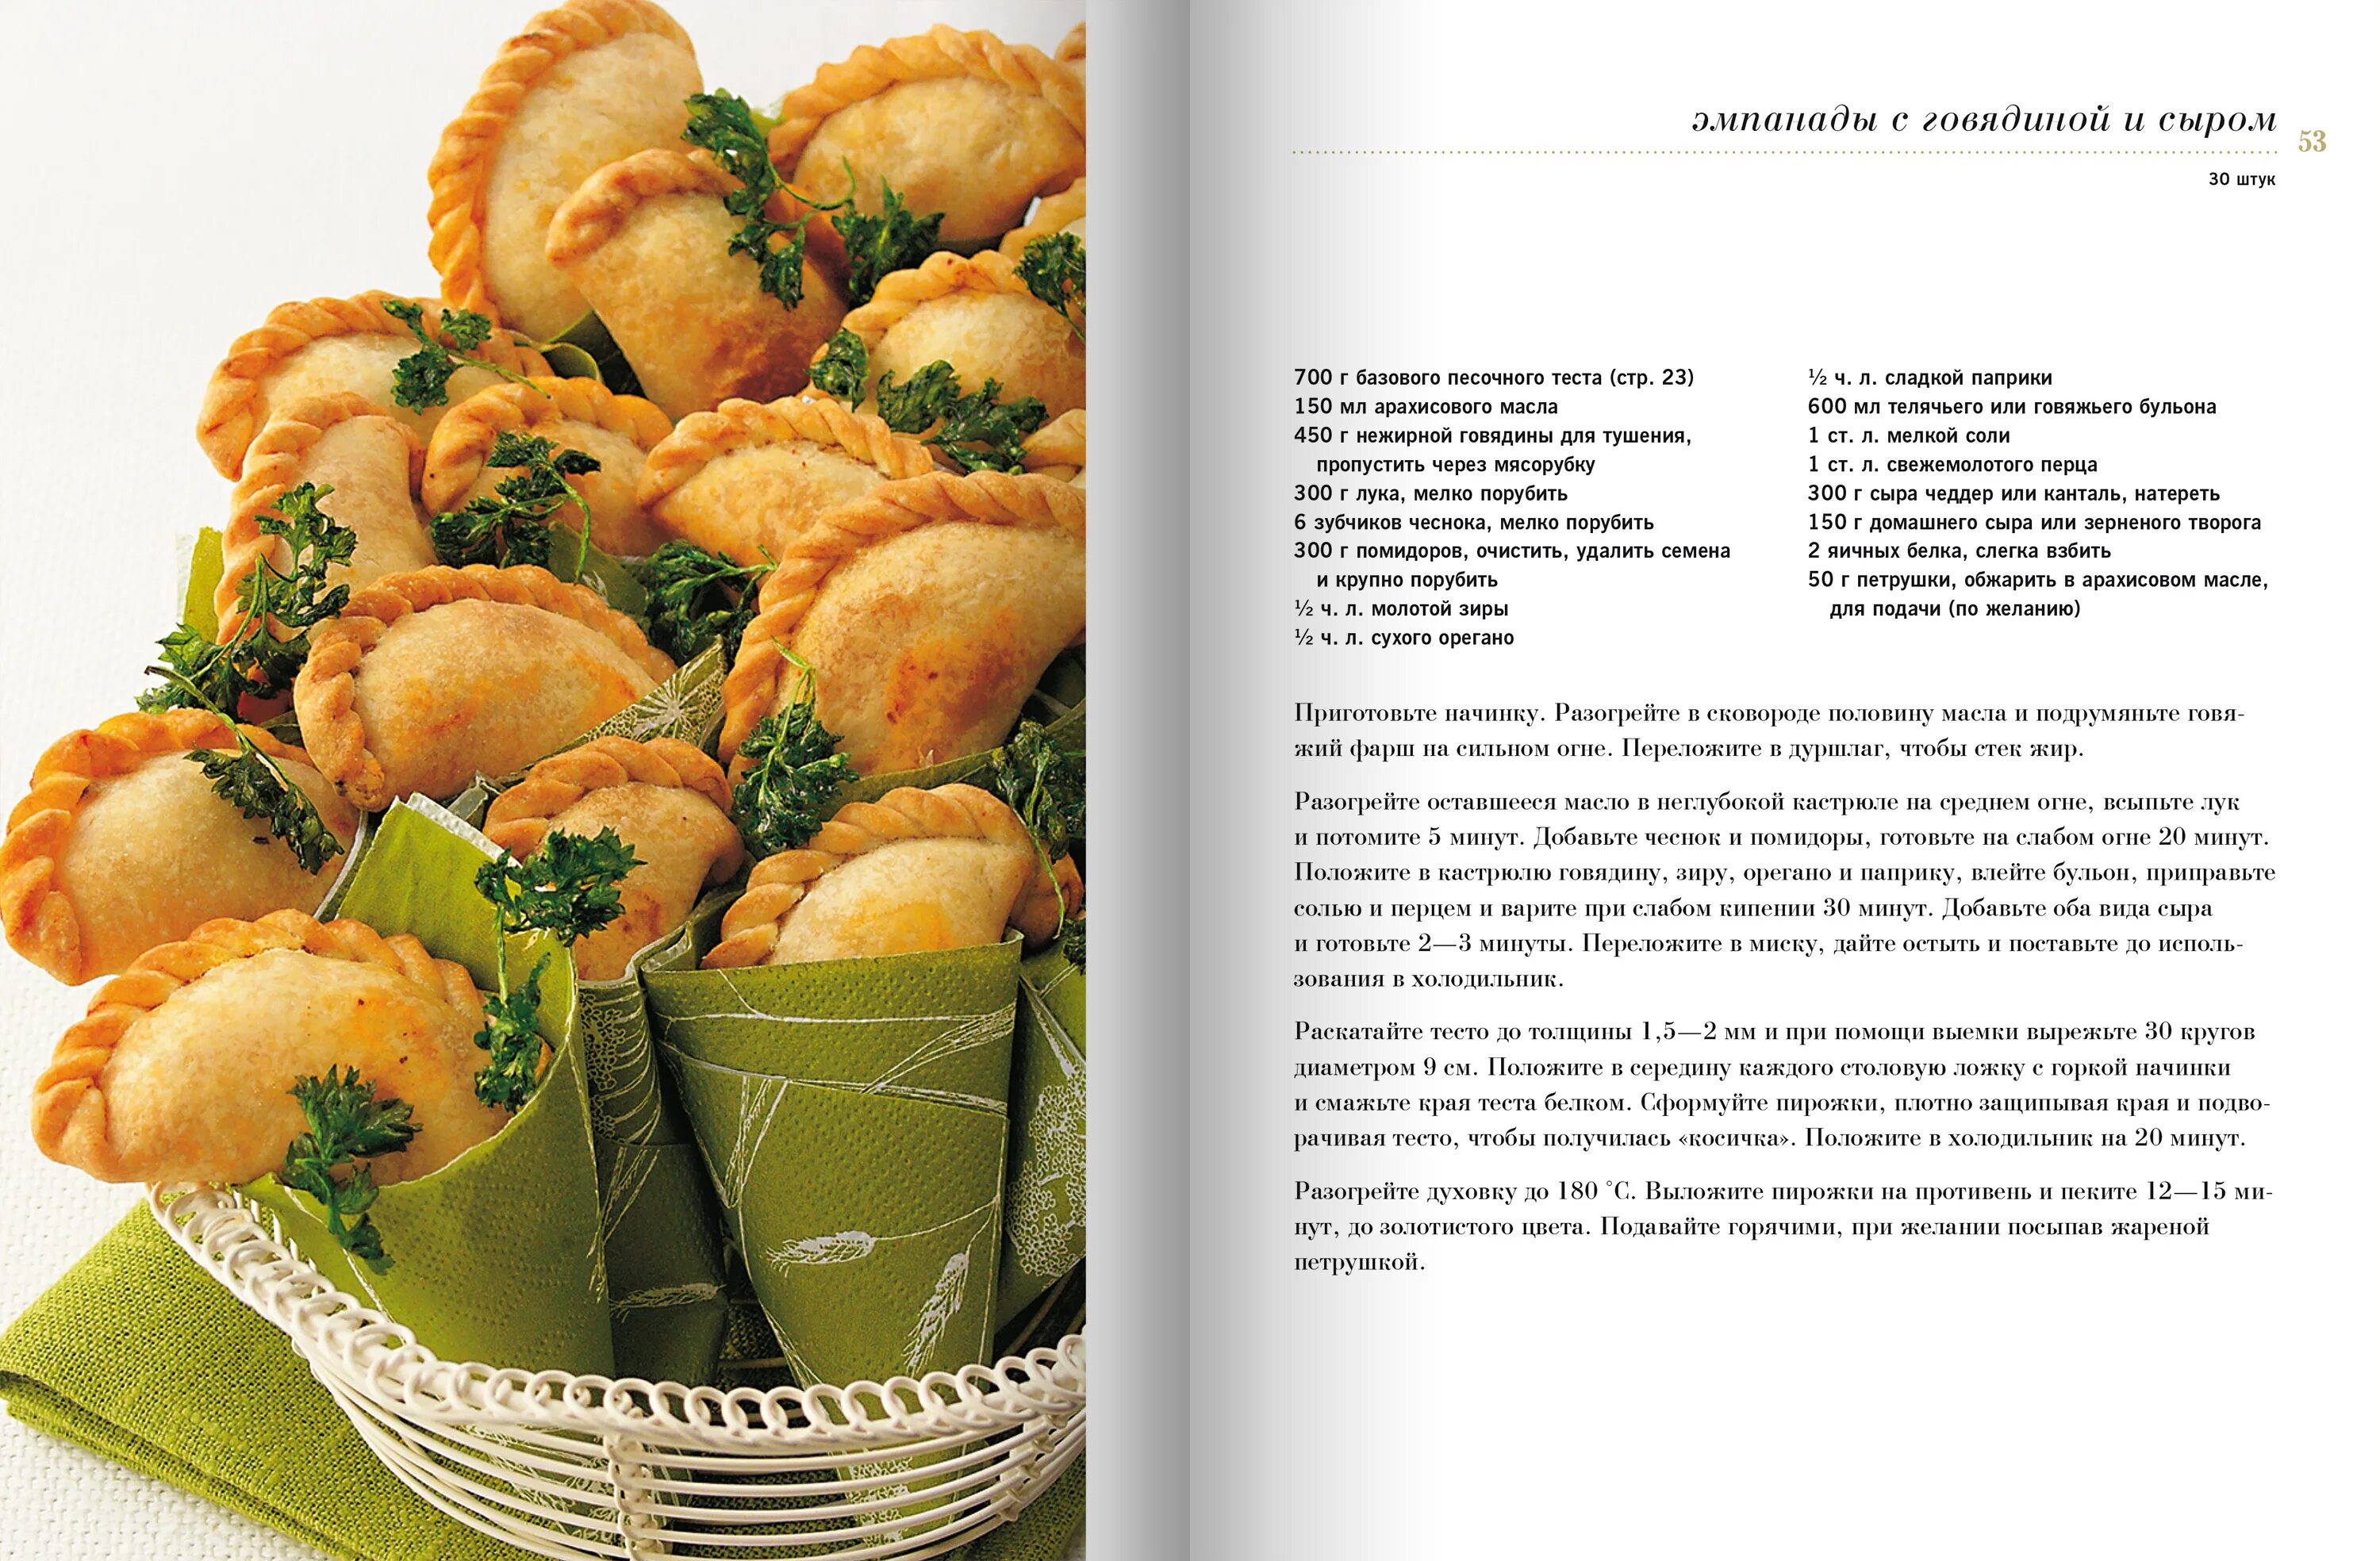 Recept. Кулинарные рецепты. Книга рецептов выпечки. Рецепты блюд в картинках с описанием. Кулинария рецепты с фотографиями.